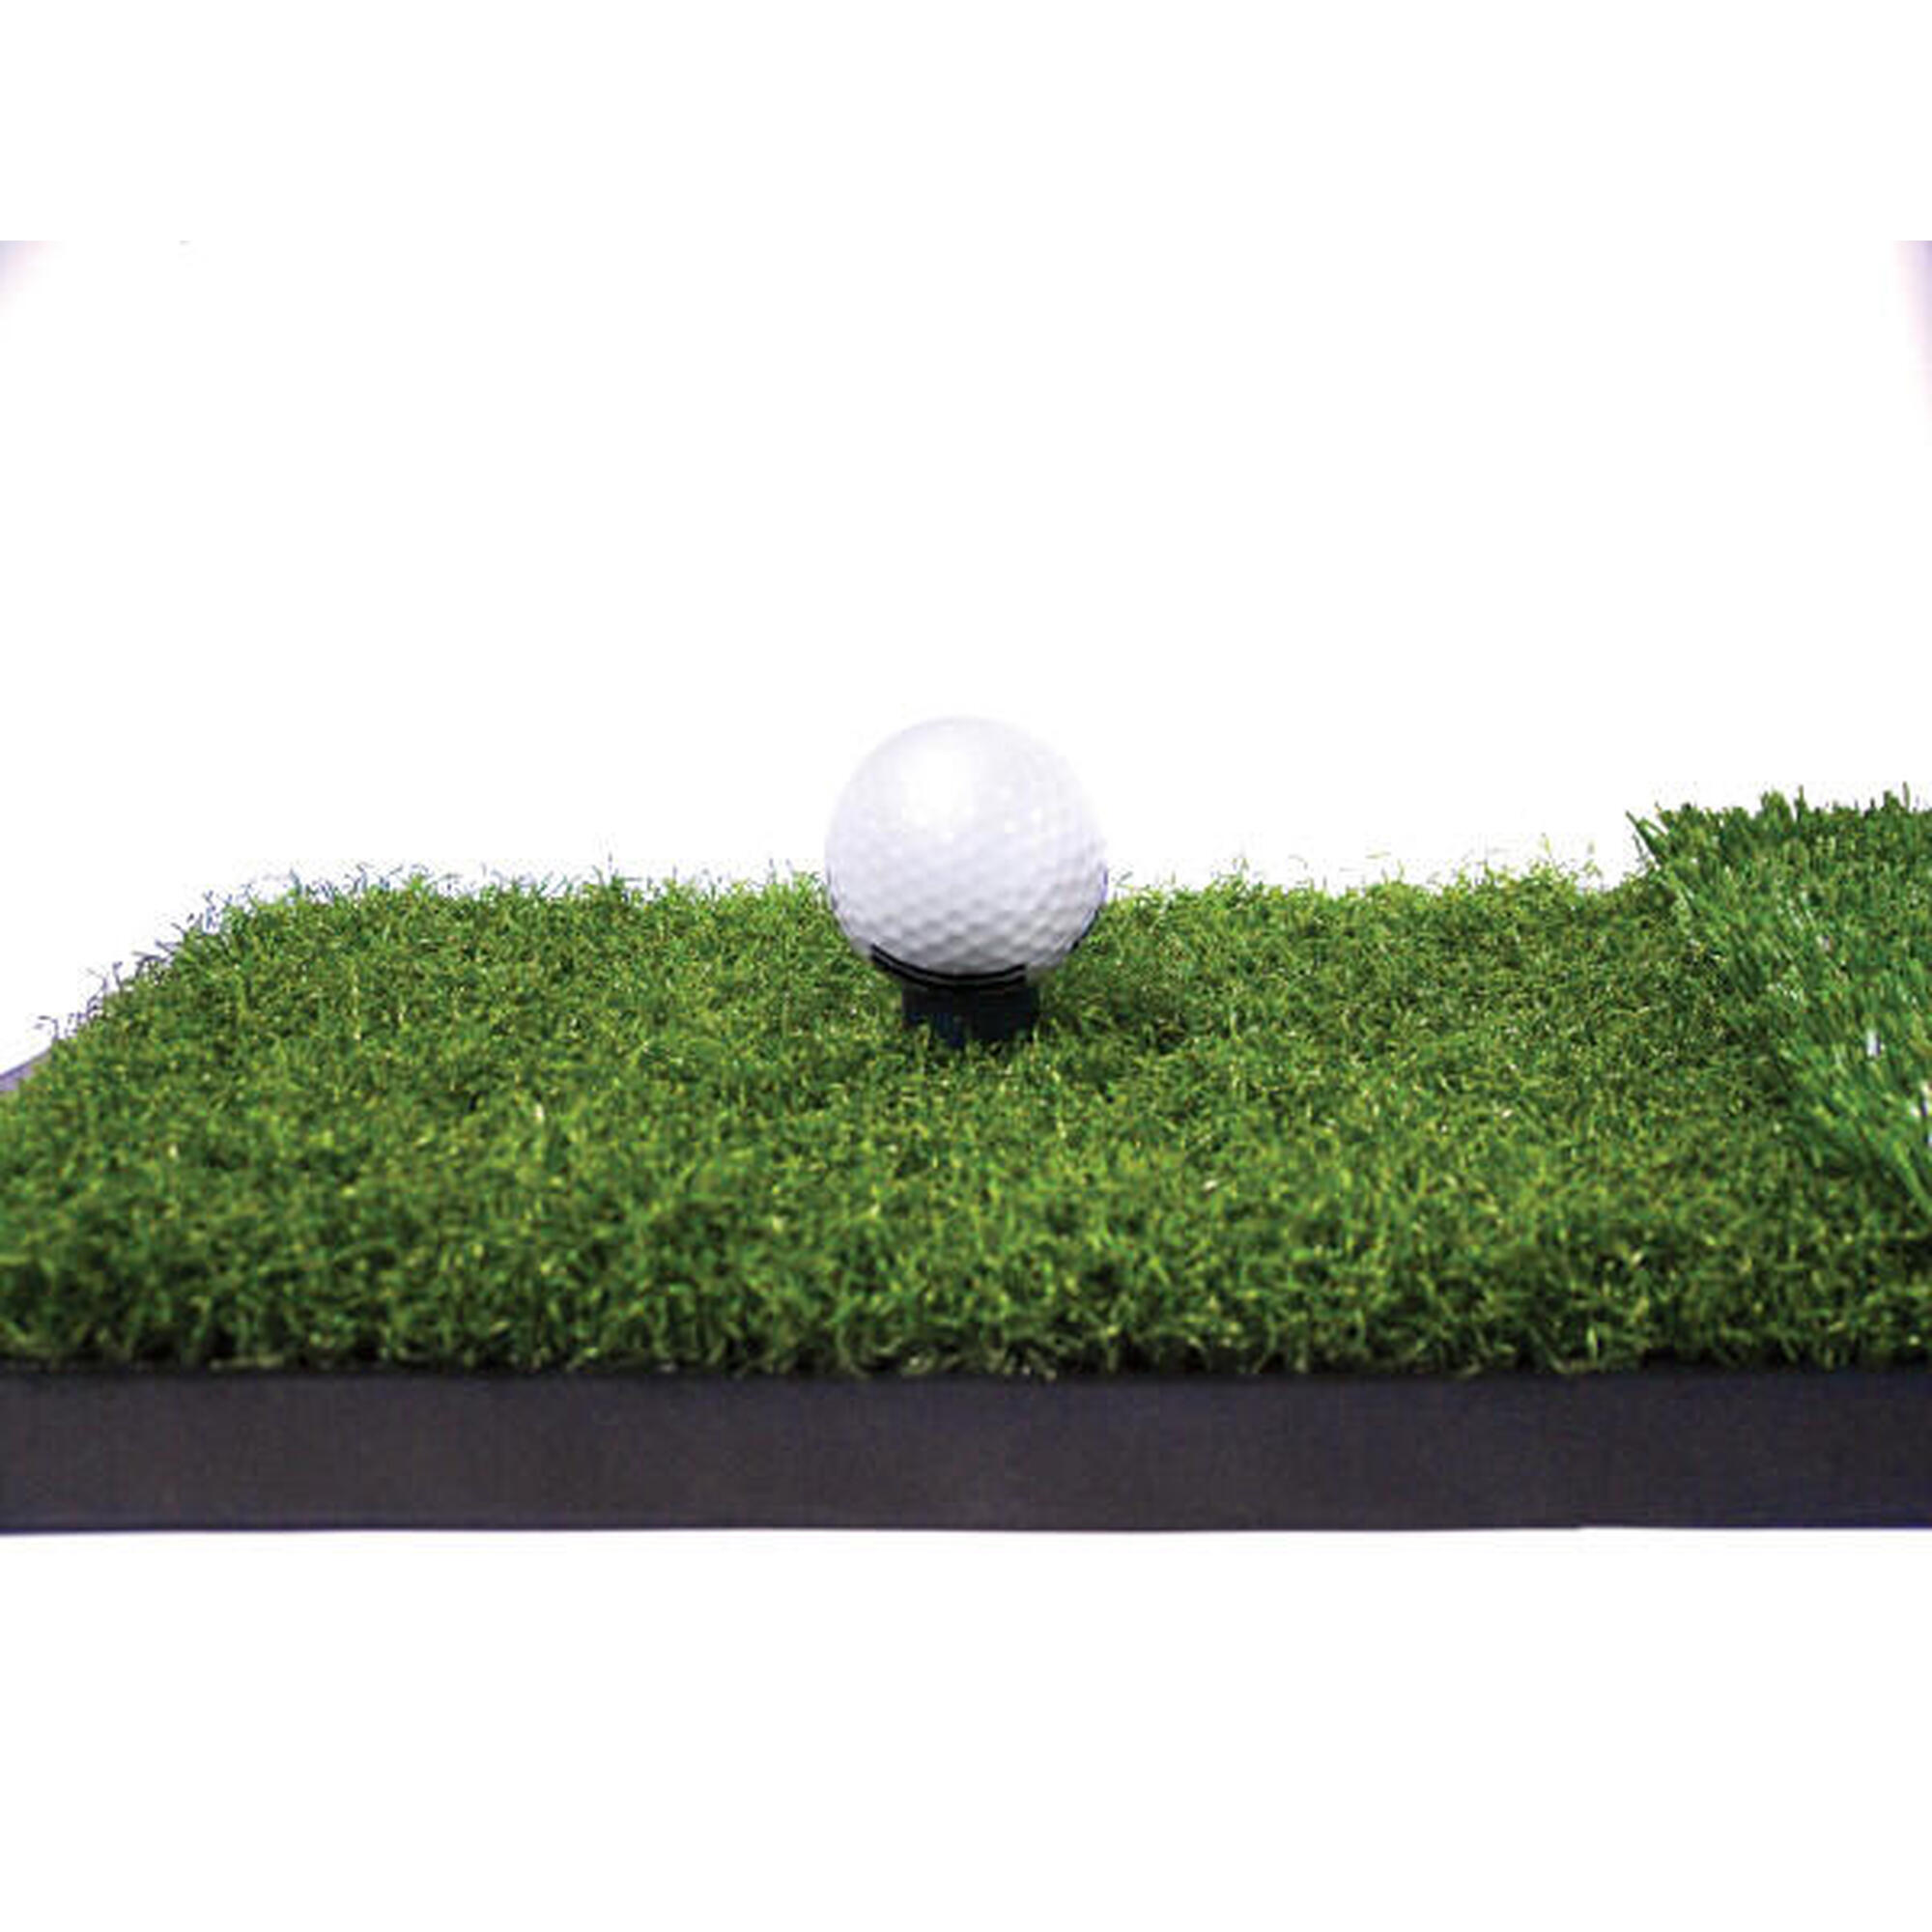 Mejore su swing con esta versátil y resistente alfombrilla de golf.